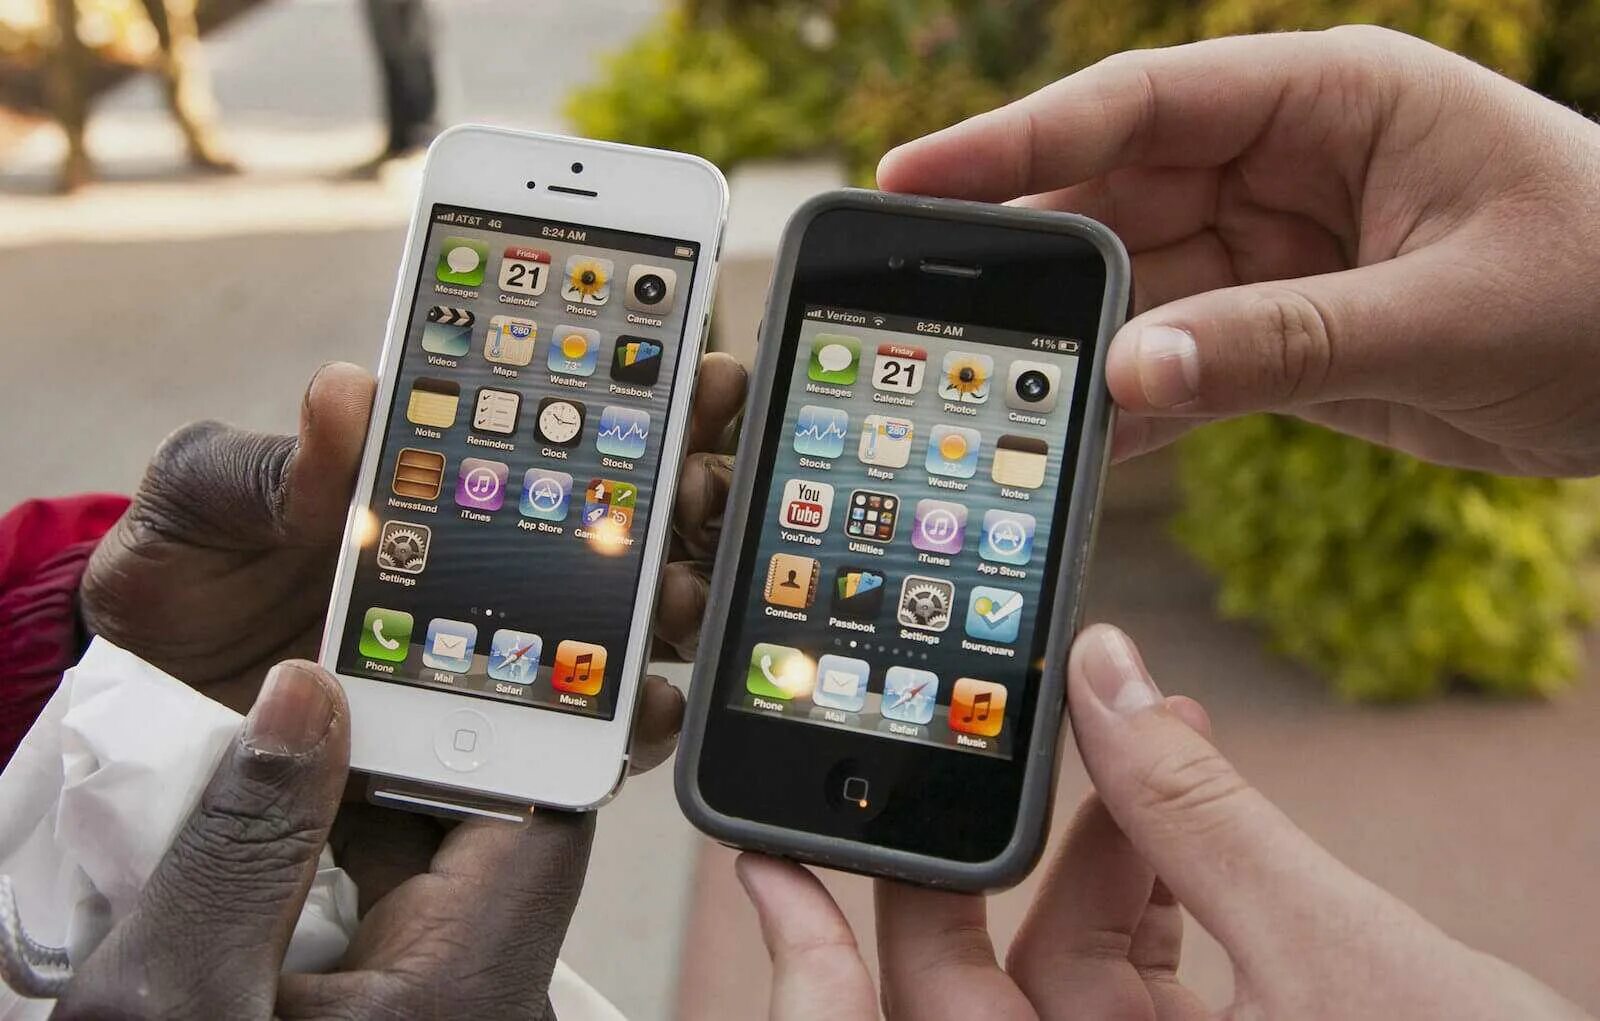 Apple iphone 1. Айфон Apple 2012 года. Первый айфон. Самый первый айфон. Когда вышел мобильный телефон